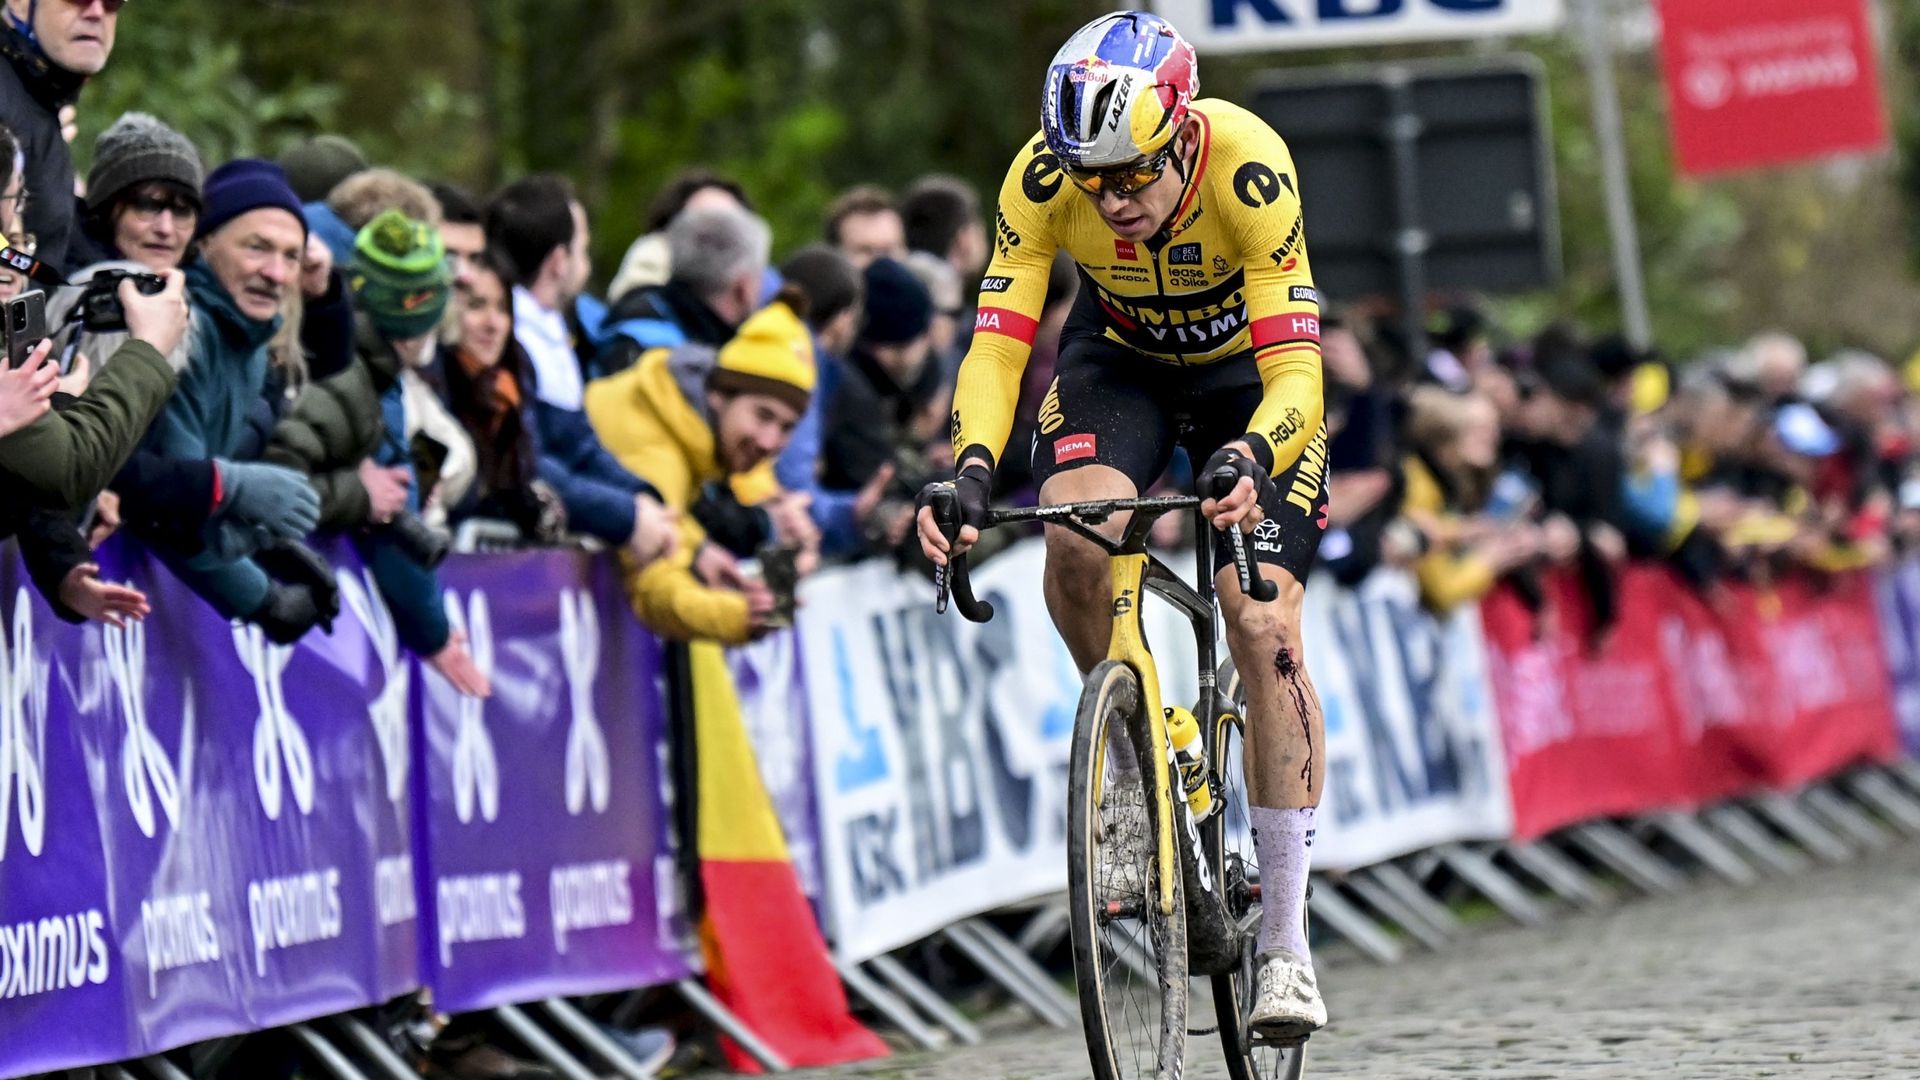 Parigi-Roubaix: Jumbo-Visma avrà il nuovo sistema di pressione delle gomme, ma non Wout van Aert